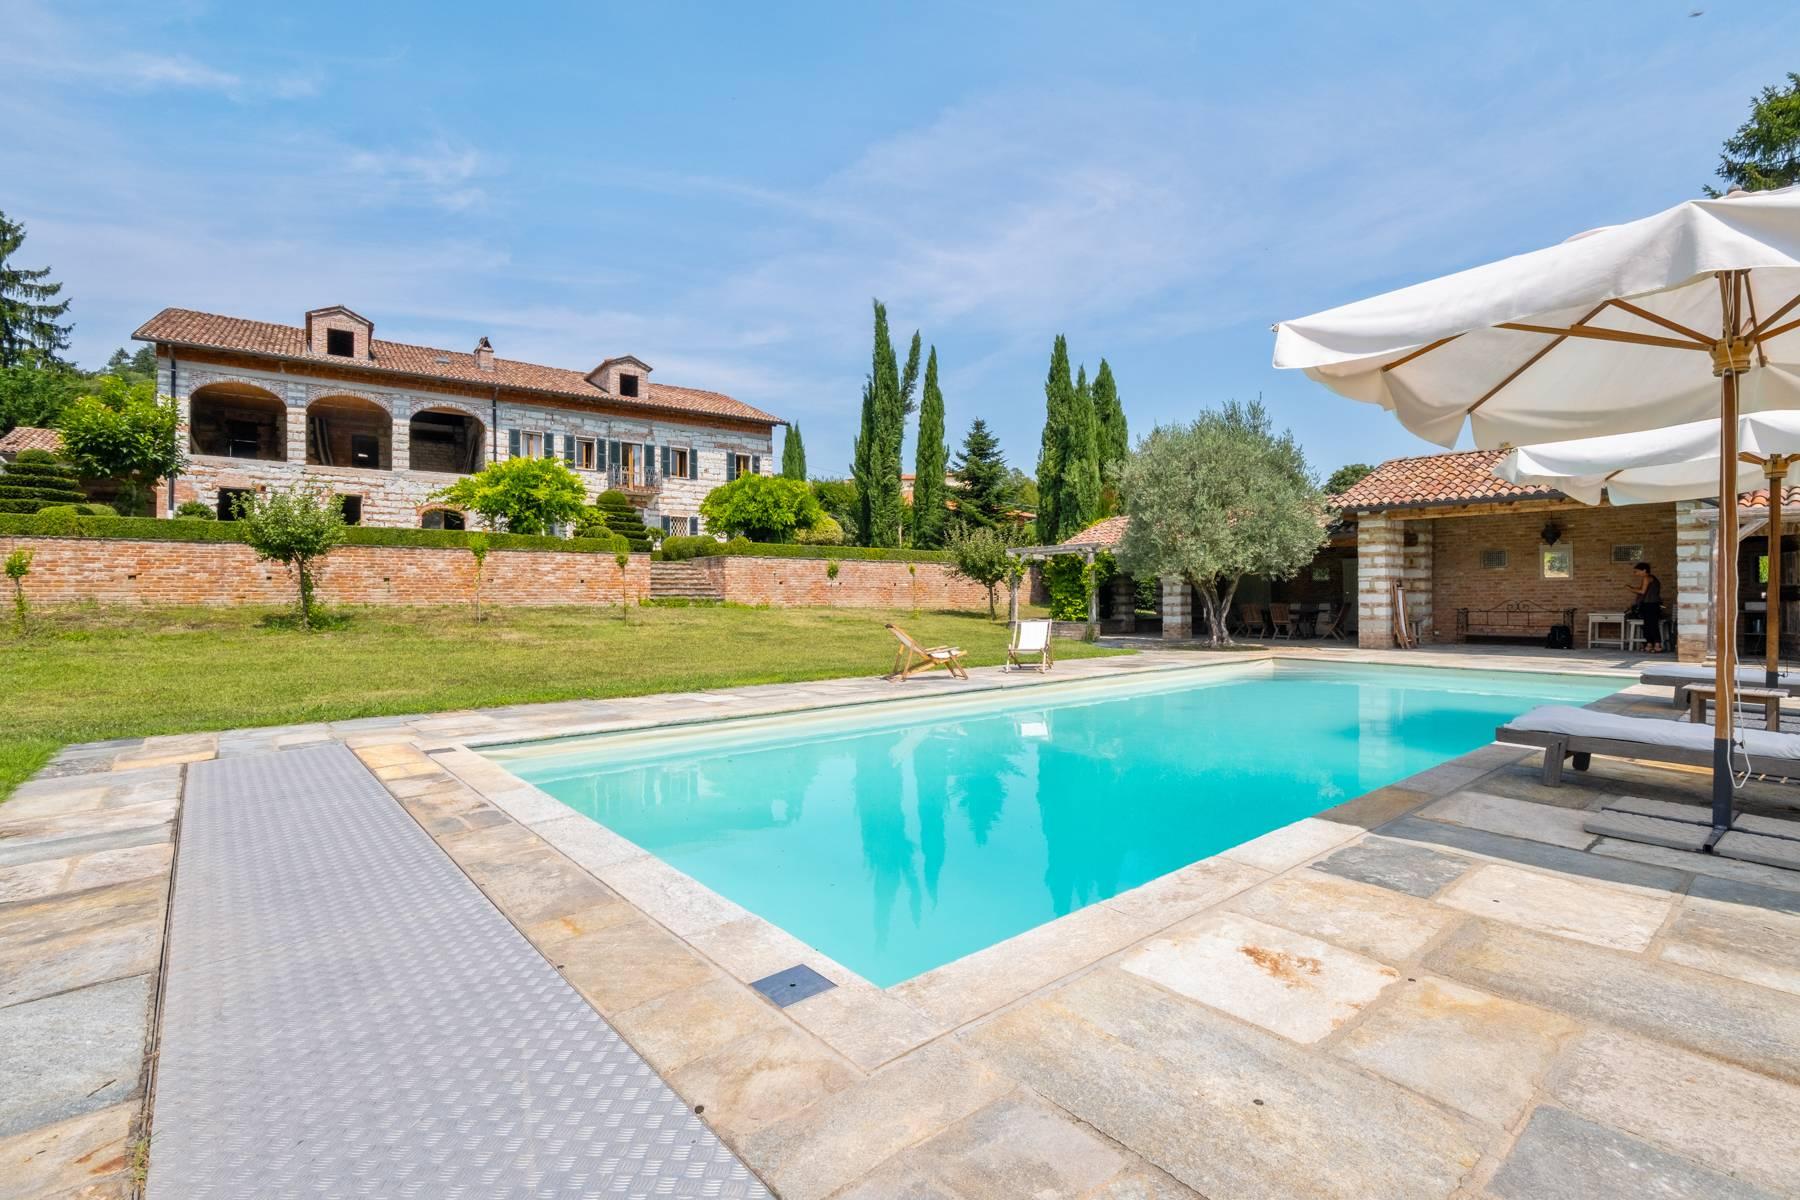 Affascinante casale con piscina nel verde delle colline del Monferrato - 5